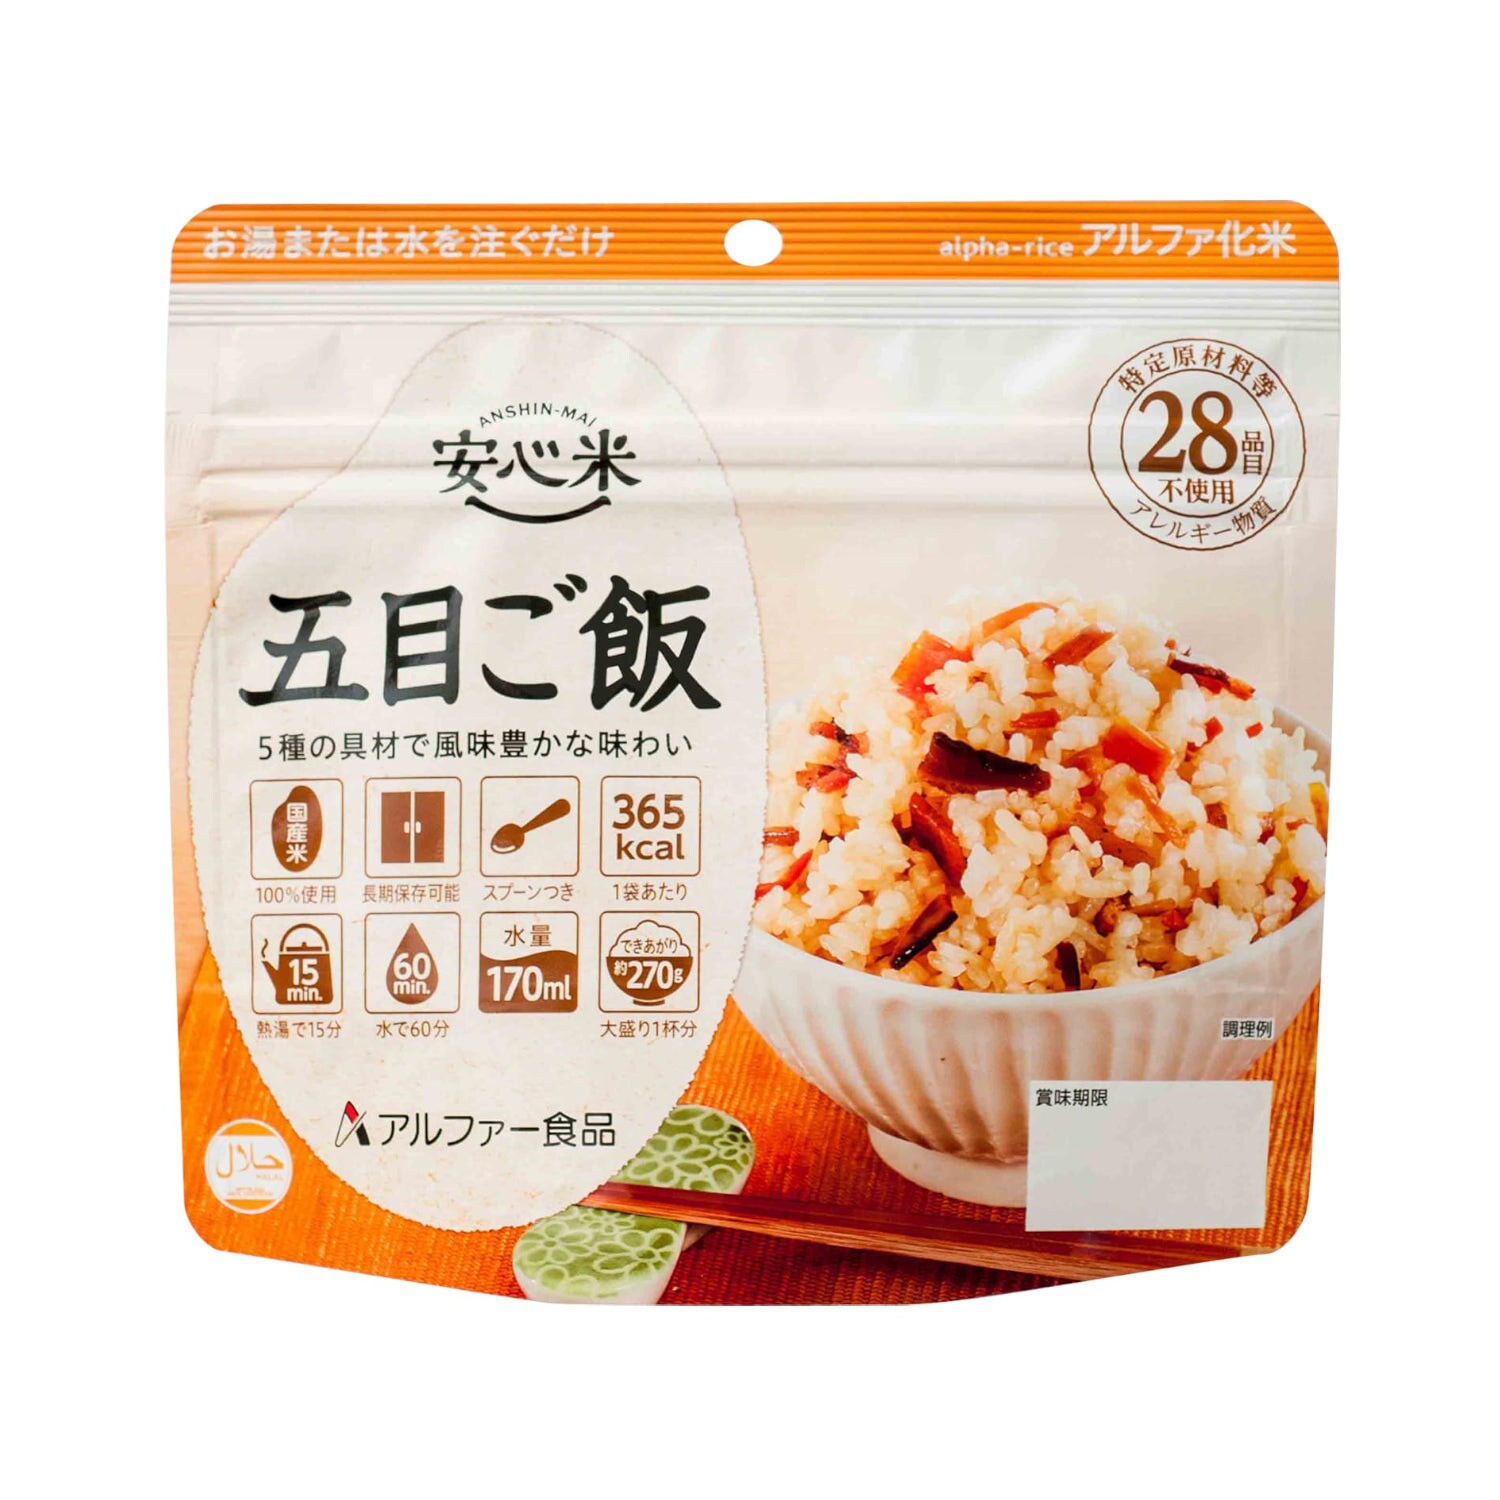 【安心米】安心米 五目ご飯15食セット